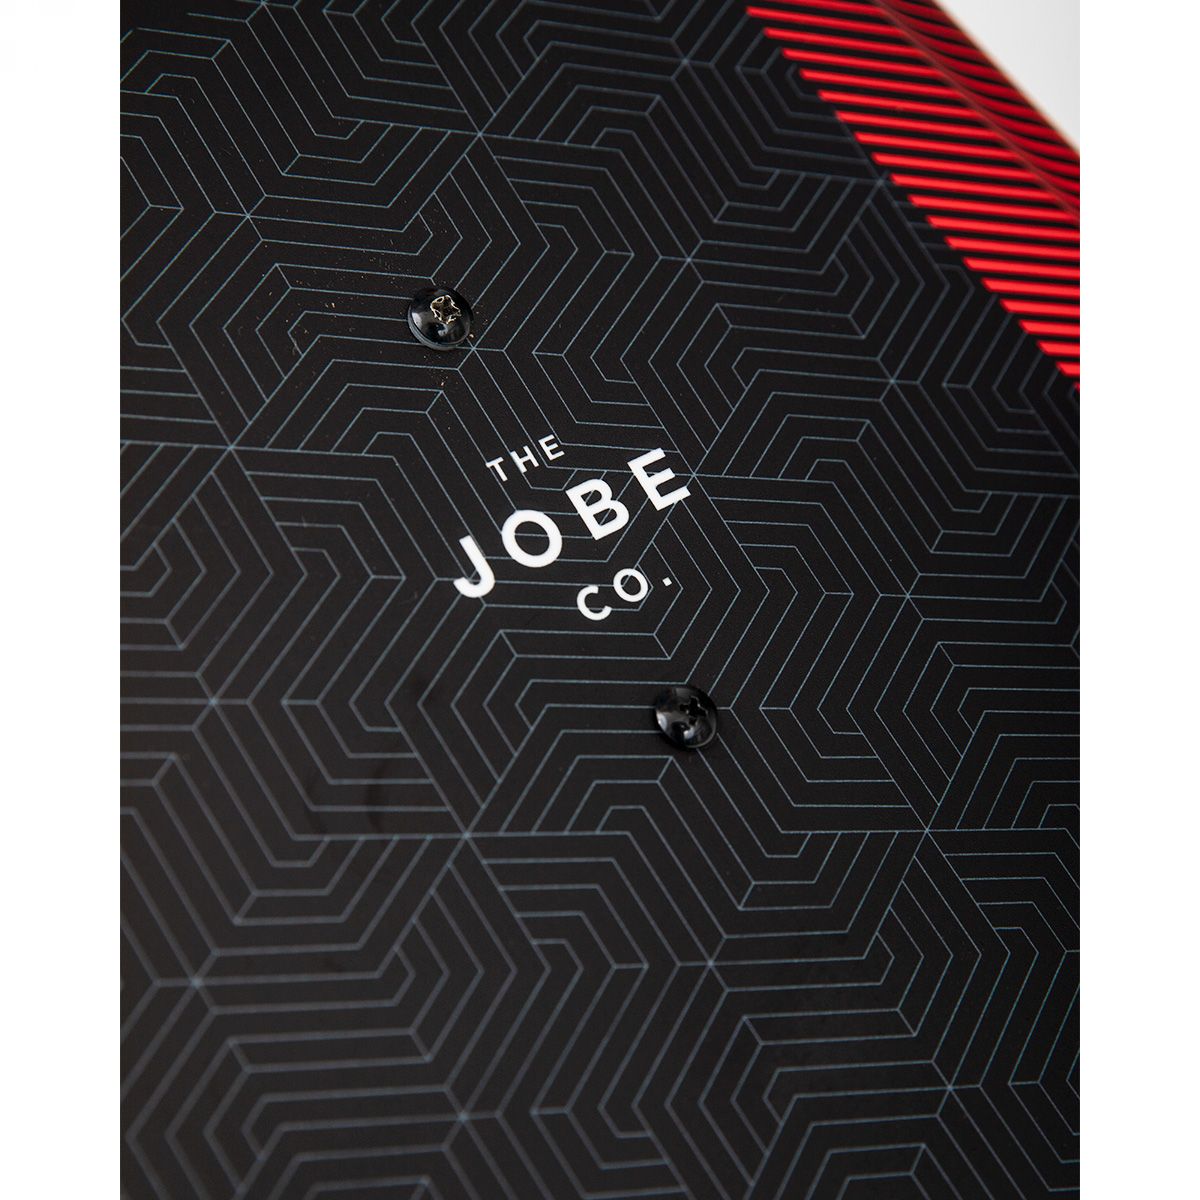 JOBE Wakeboard LOGO 138 & Maze Bindings Package